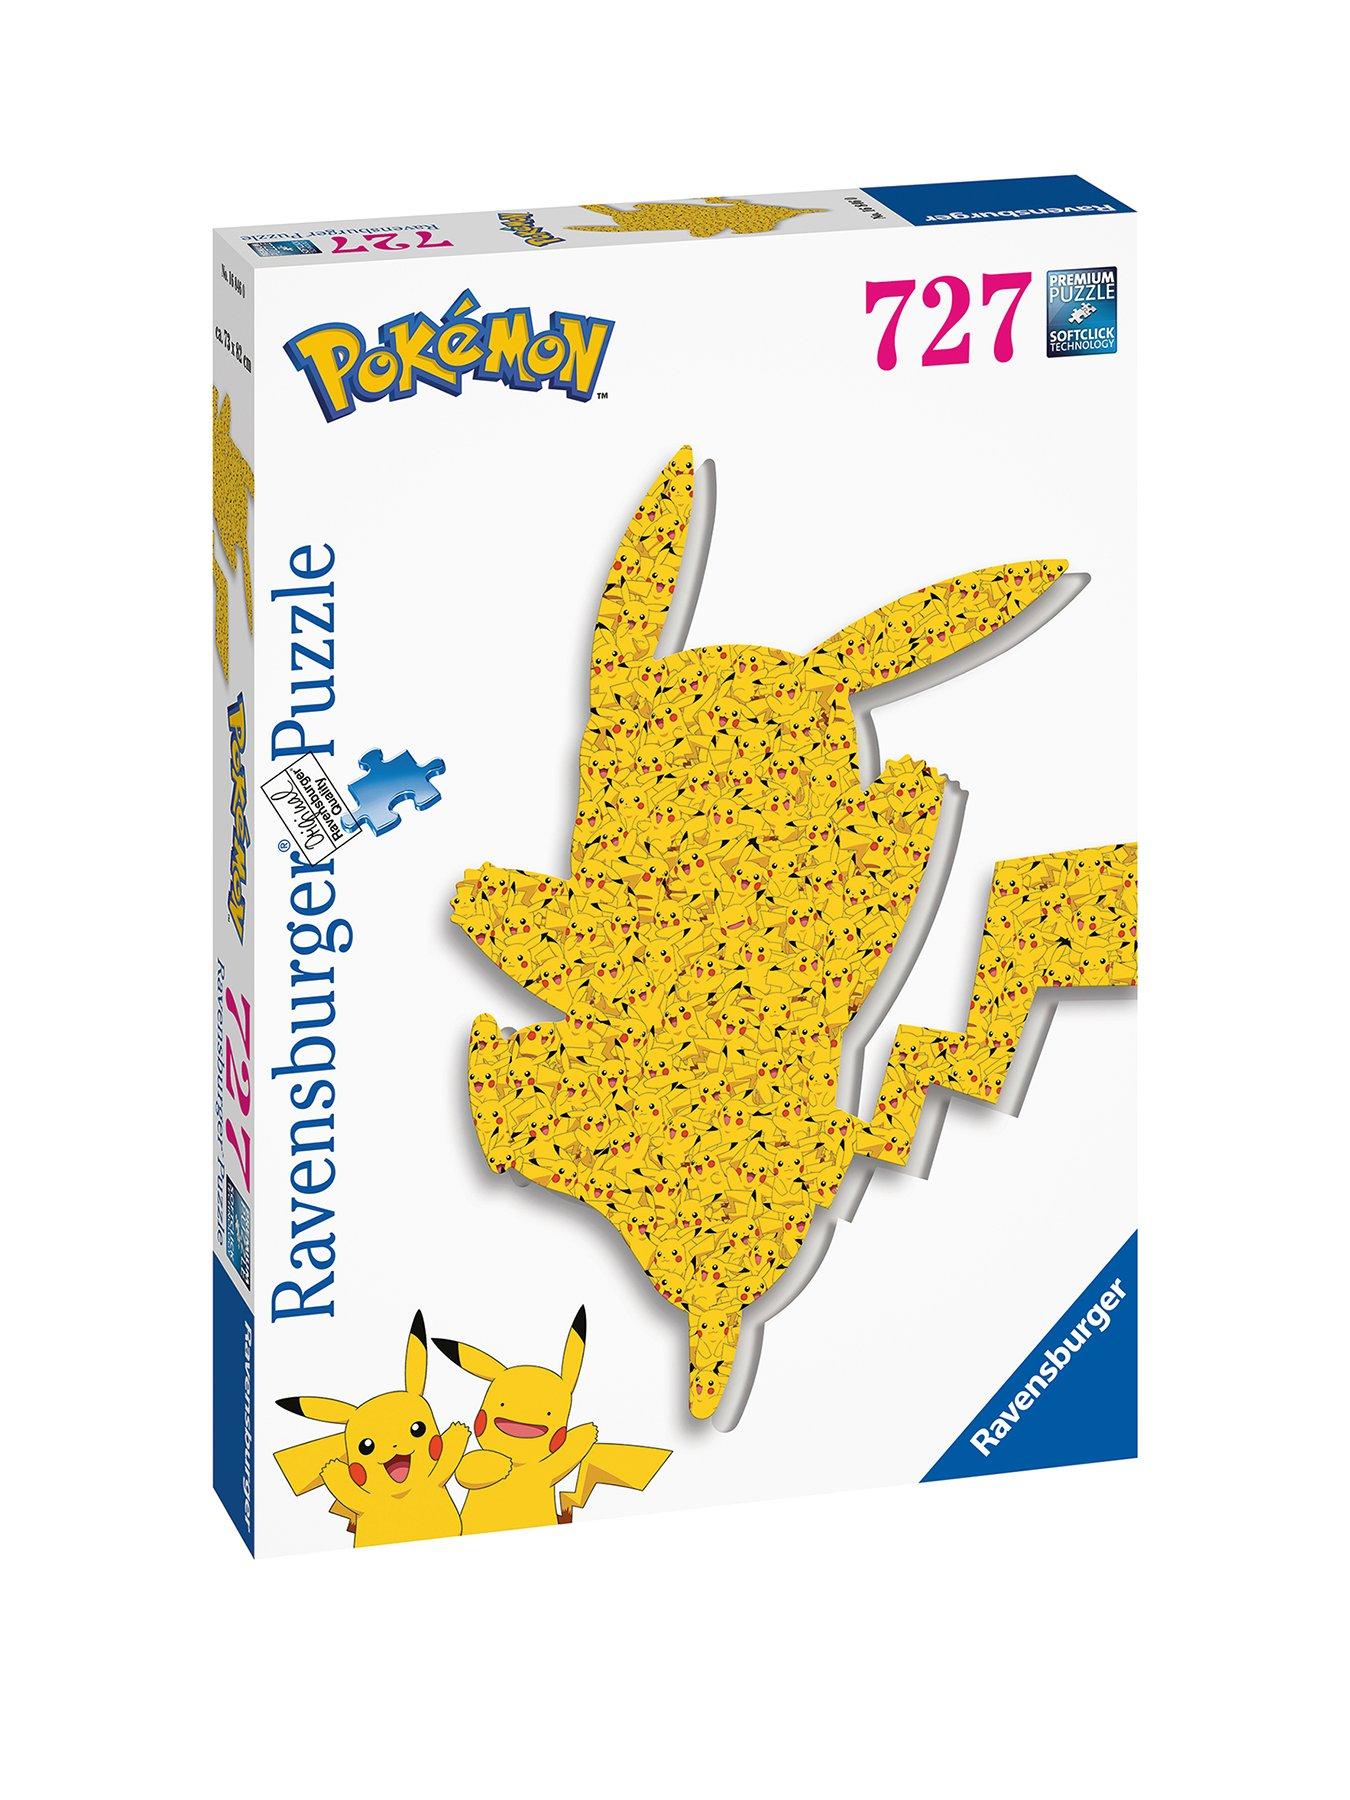 Puzzle Ravensburger Pokémon puzzle 3D Ball (73 pièces)